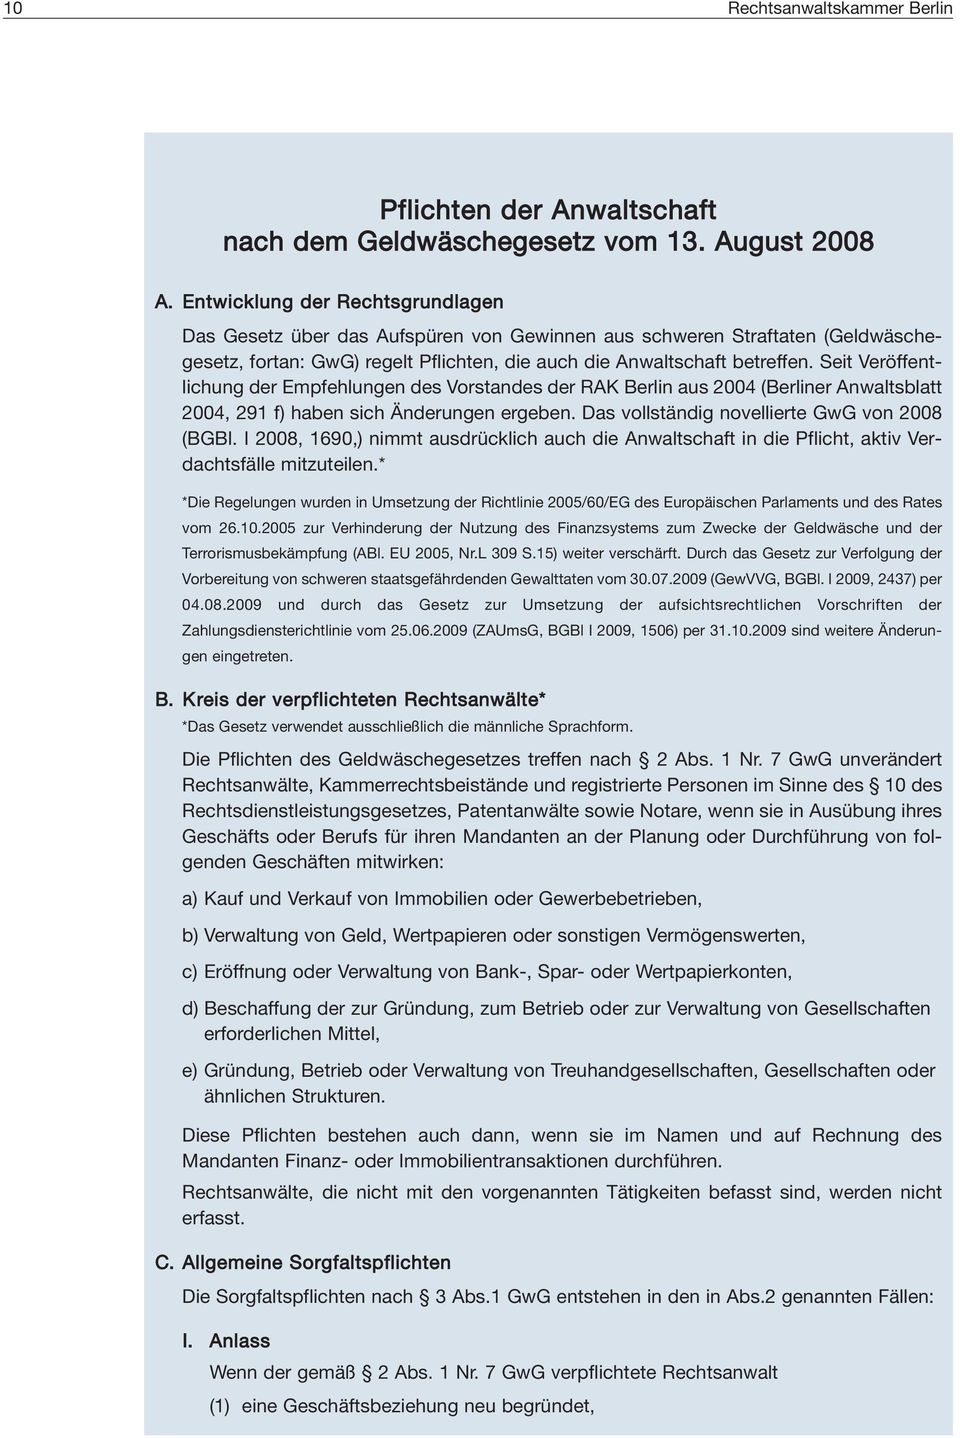 Seit Veröffentlichung der Empfehlungen des Vorstandes der RAK Berlin aus 2004 (Berliner Anwaltsblatt 2004, 291 f) haben sich Änderungen ergeben. Das vollständig novellierte GwG von 2008 (BGBl.